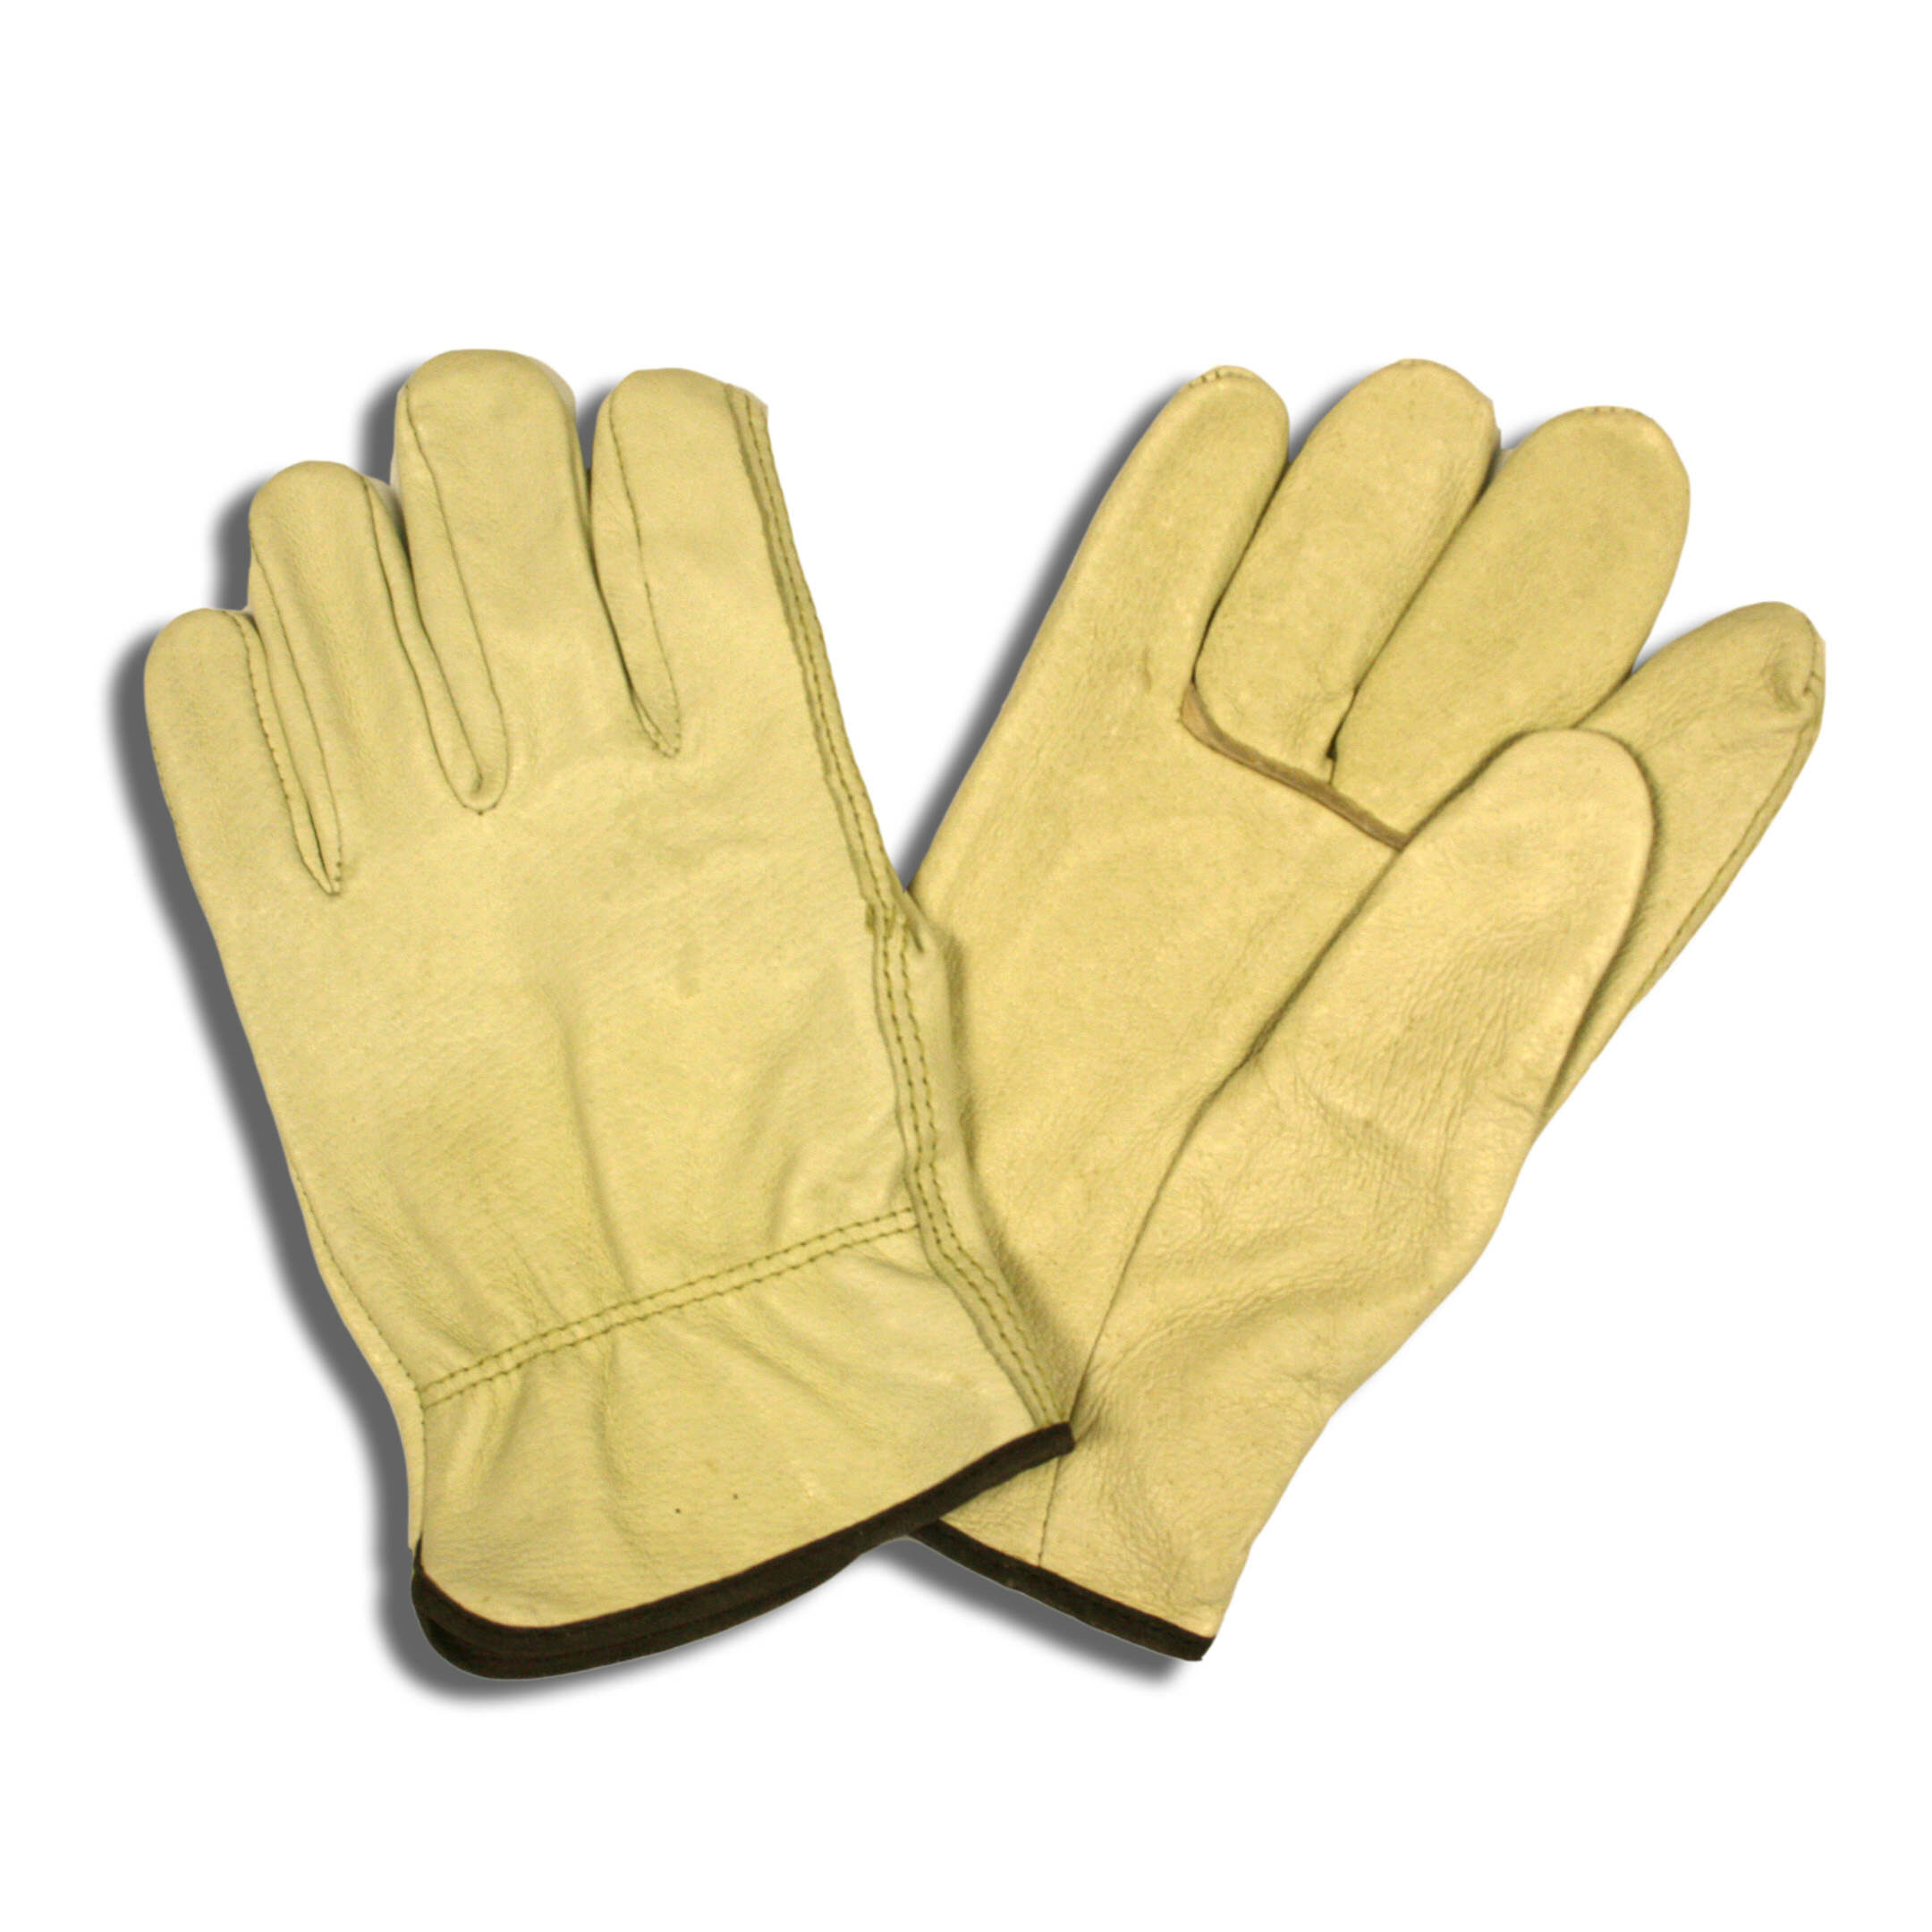 Cordova (8800) Economy Grain Pigskin Leather Driver's Glove, Tan